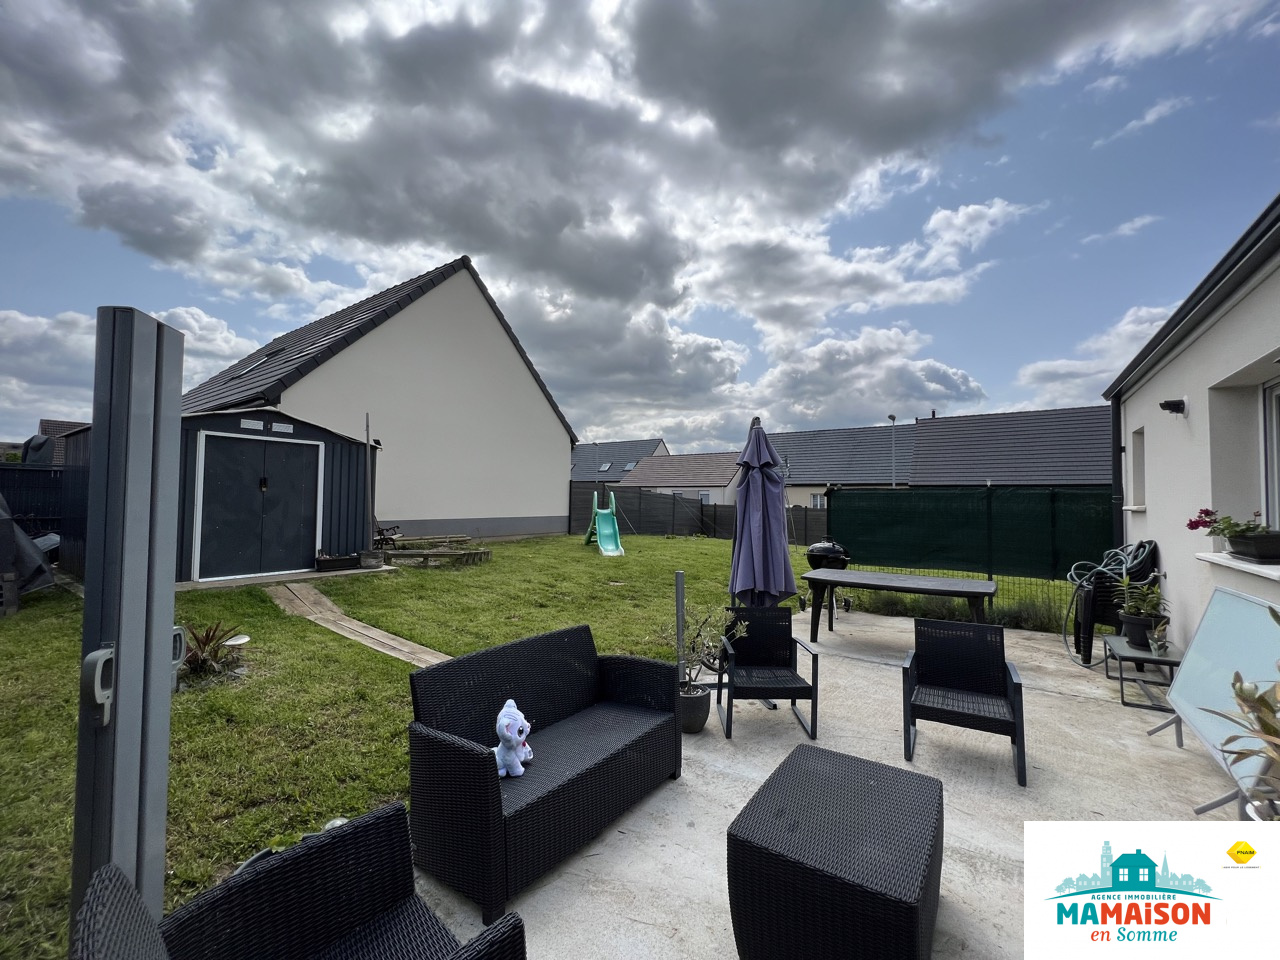 Immo80 – L'immobilier à Amiens et dans la Somme-Pavillon de 2017, 78,71 m2, 4 pièces, 2 chambres et. un jardin clos sur 439 m2 de terrain.